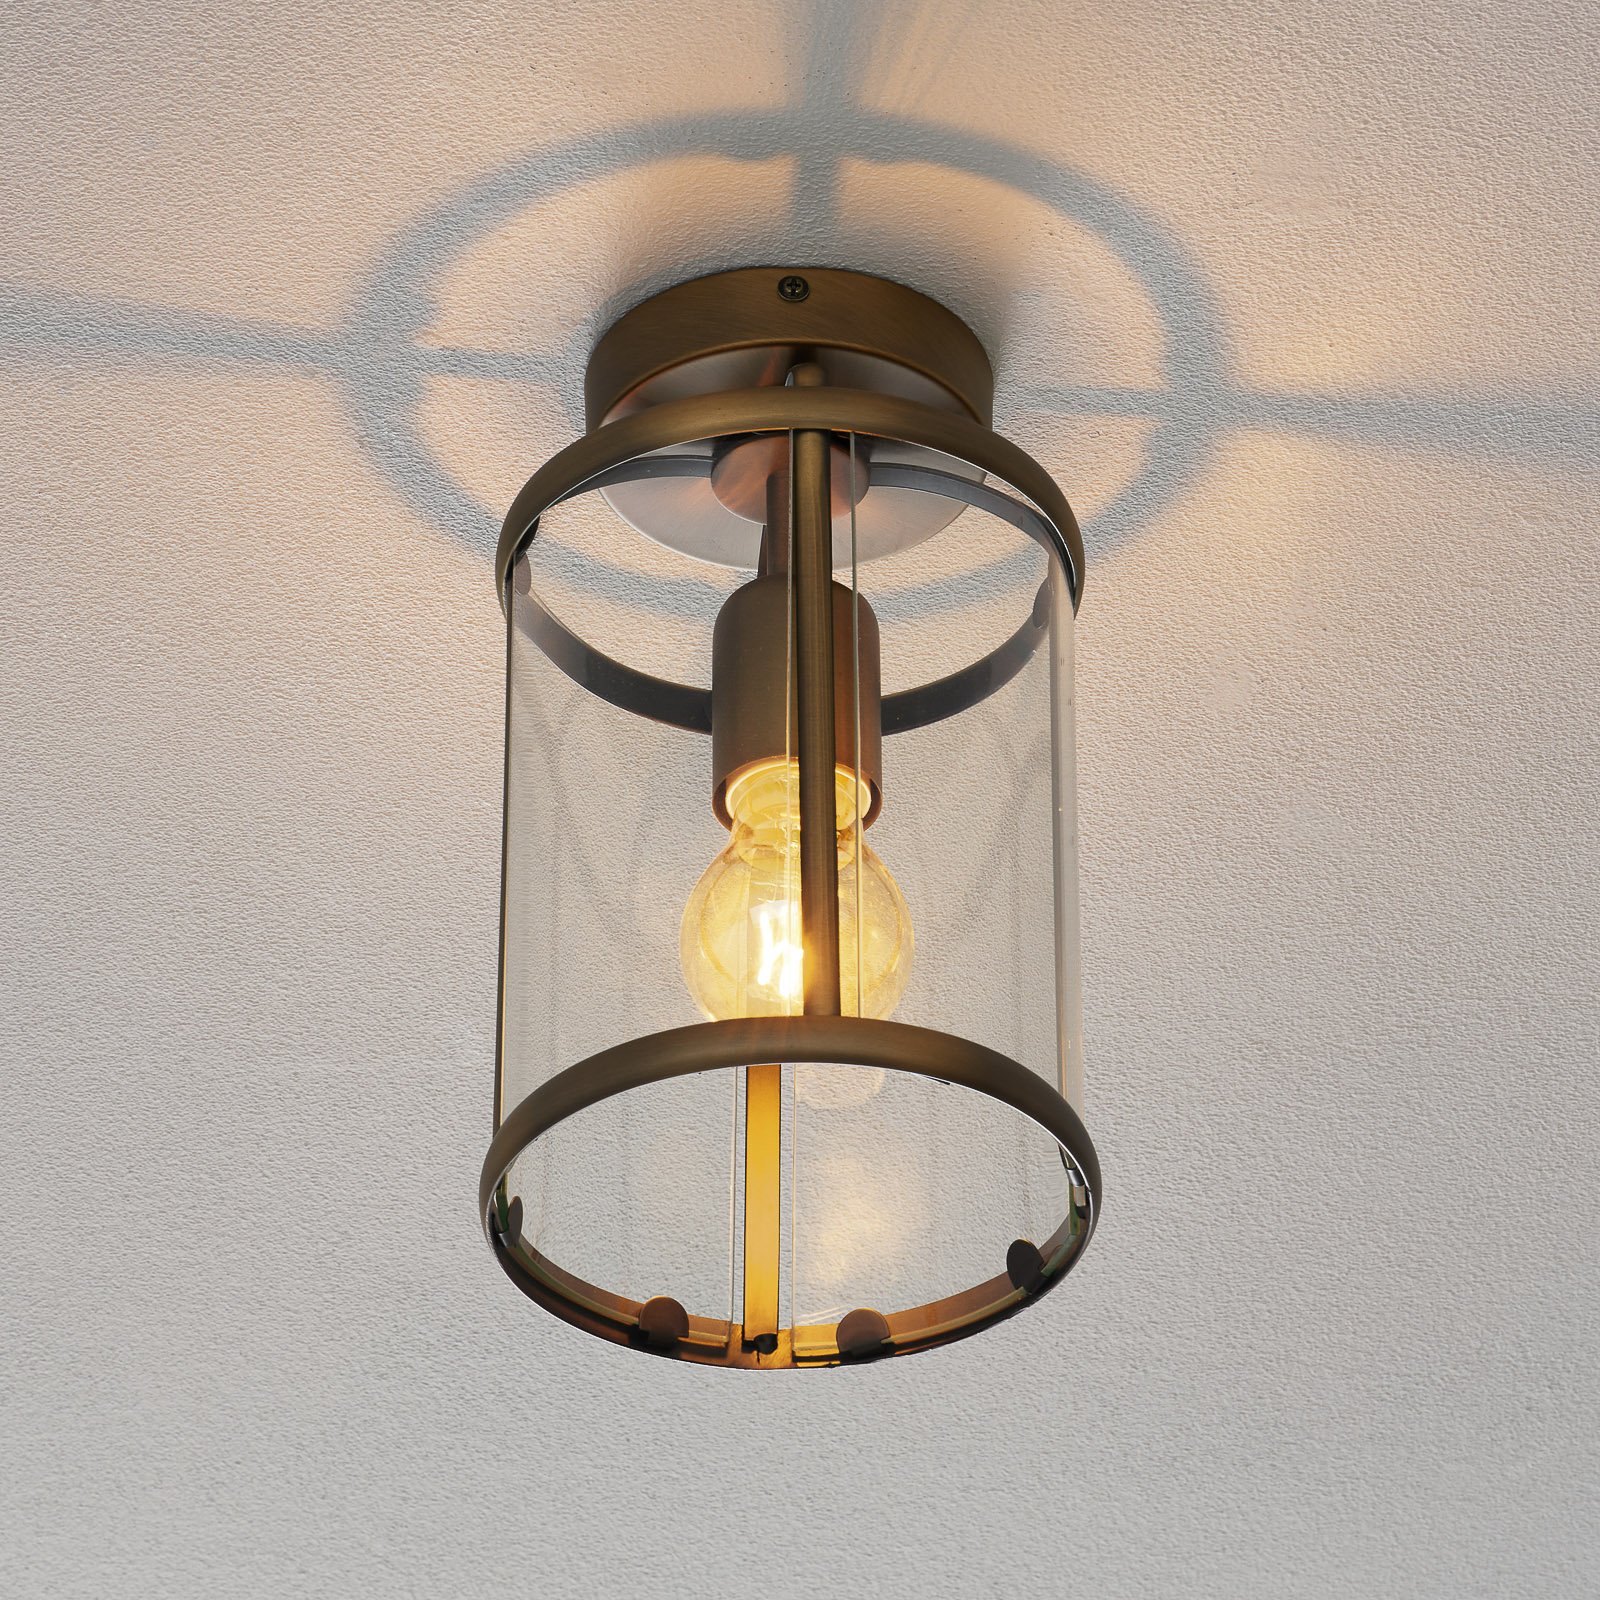 Tiltalende Pimpernel taklampe